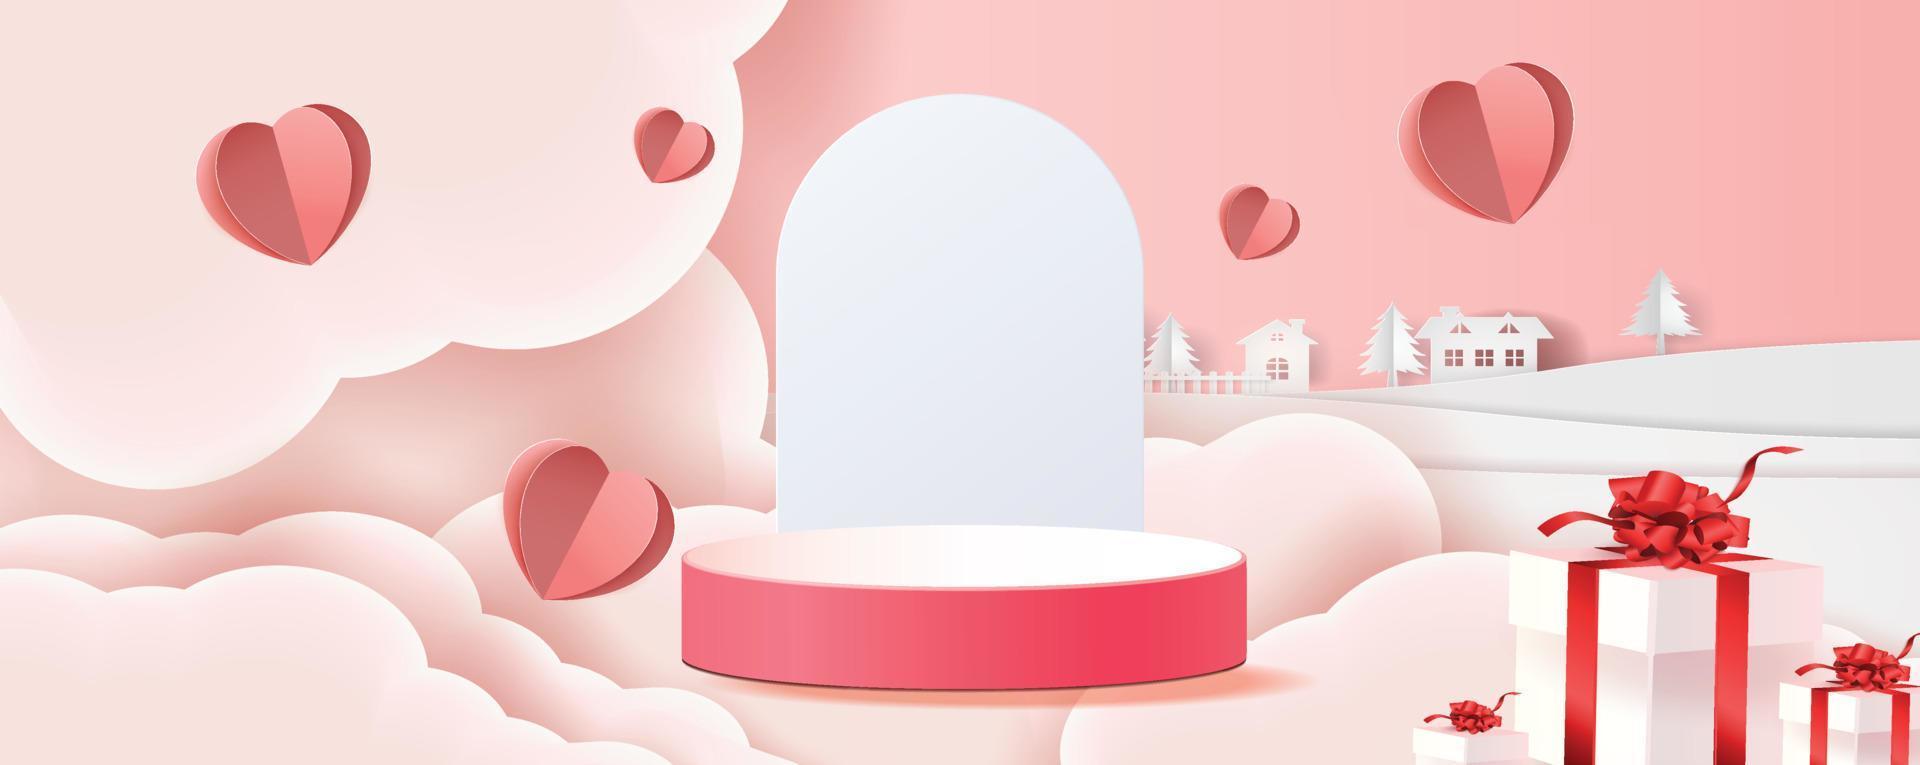 Fondo rosso del prodotto del podio 3d per la bandiera della decorazione di illustation di vettore di progettazione di concetto di romanticismo di amore di valentine.pink e del cuore